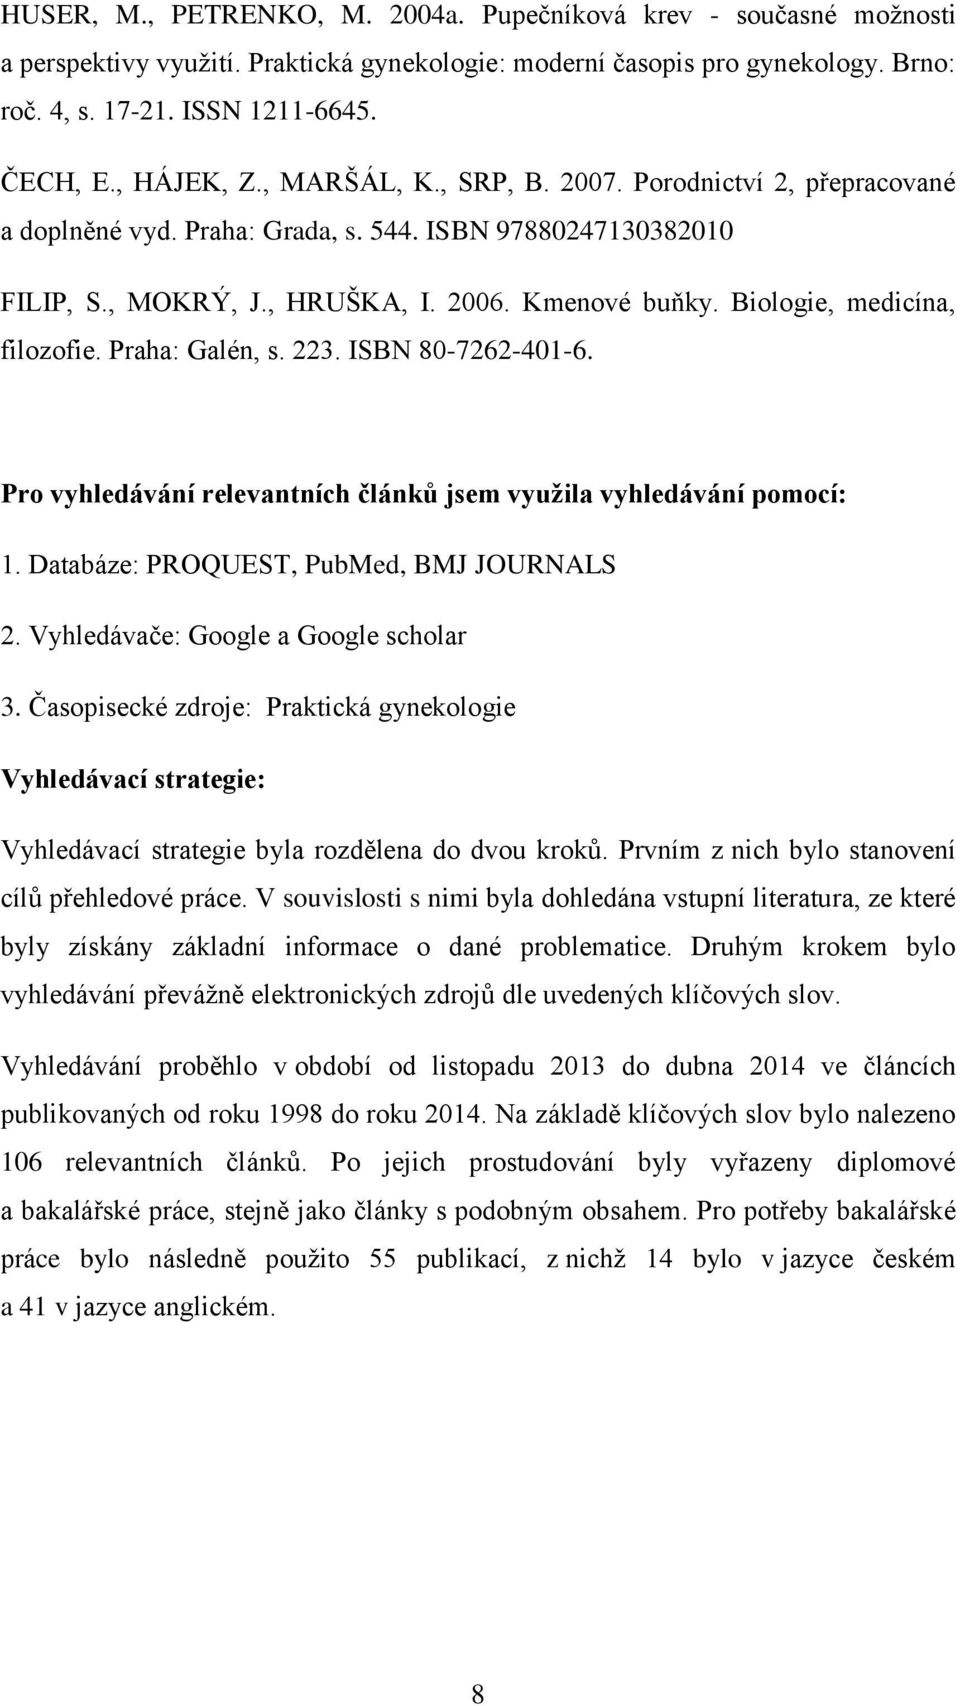 Biologie, medicína, filozofie. Praha: Galén, s. 223. ISBN 80-7262-401-6. Pro vyhledávání relevantních článků jsem využila vyhledávání pomocí: 1. Databáze: PROQUEST, PubMed, BMJ JOURNALS 2.